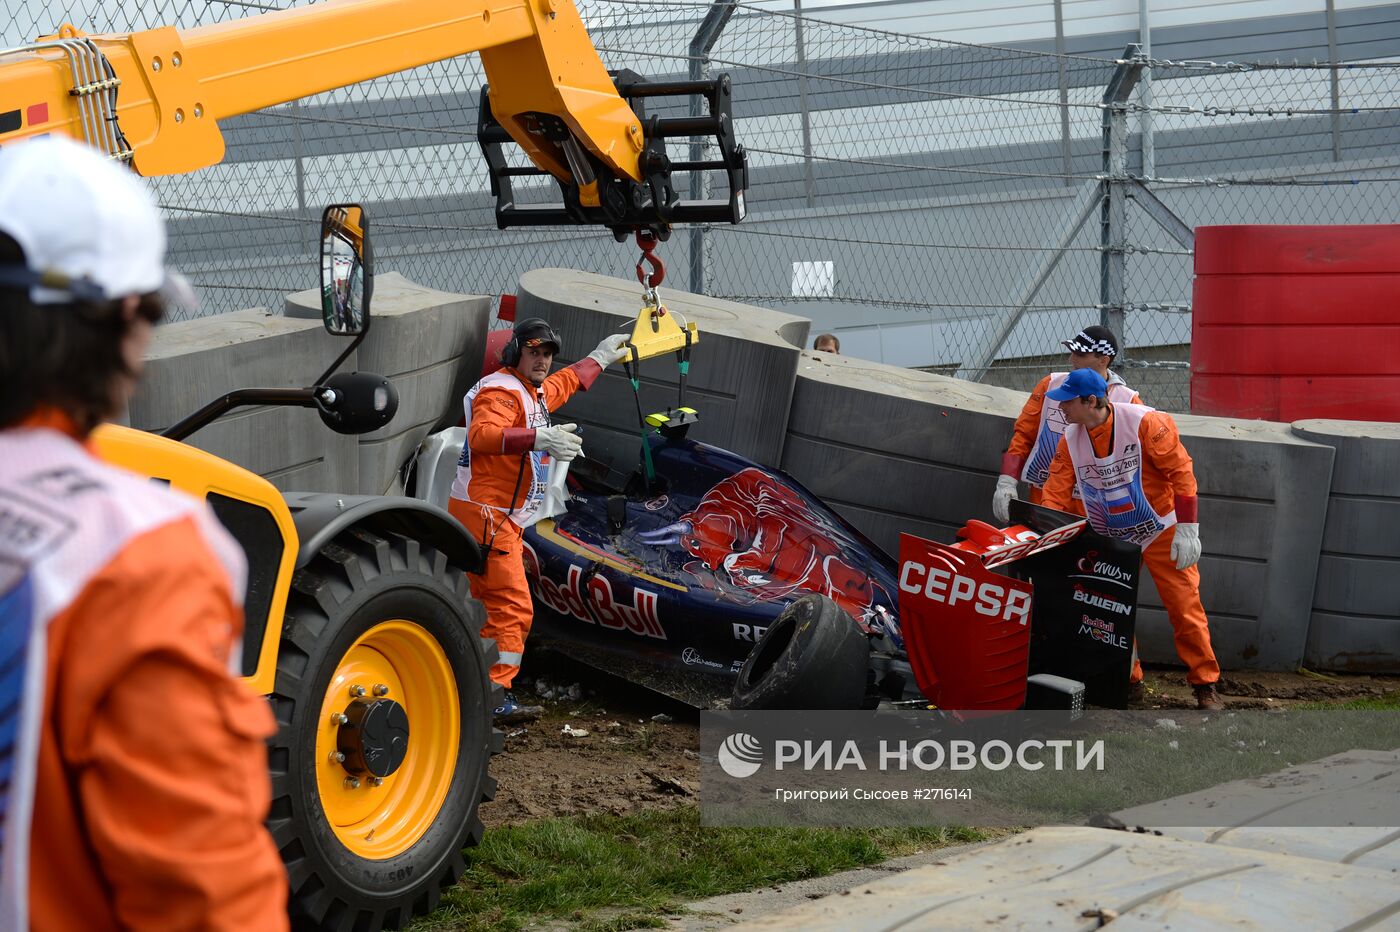 Третья сессия свободных заездов на этапе Формулы-1 в Сочи прервана из-за аварии